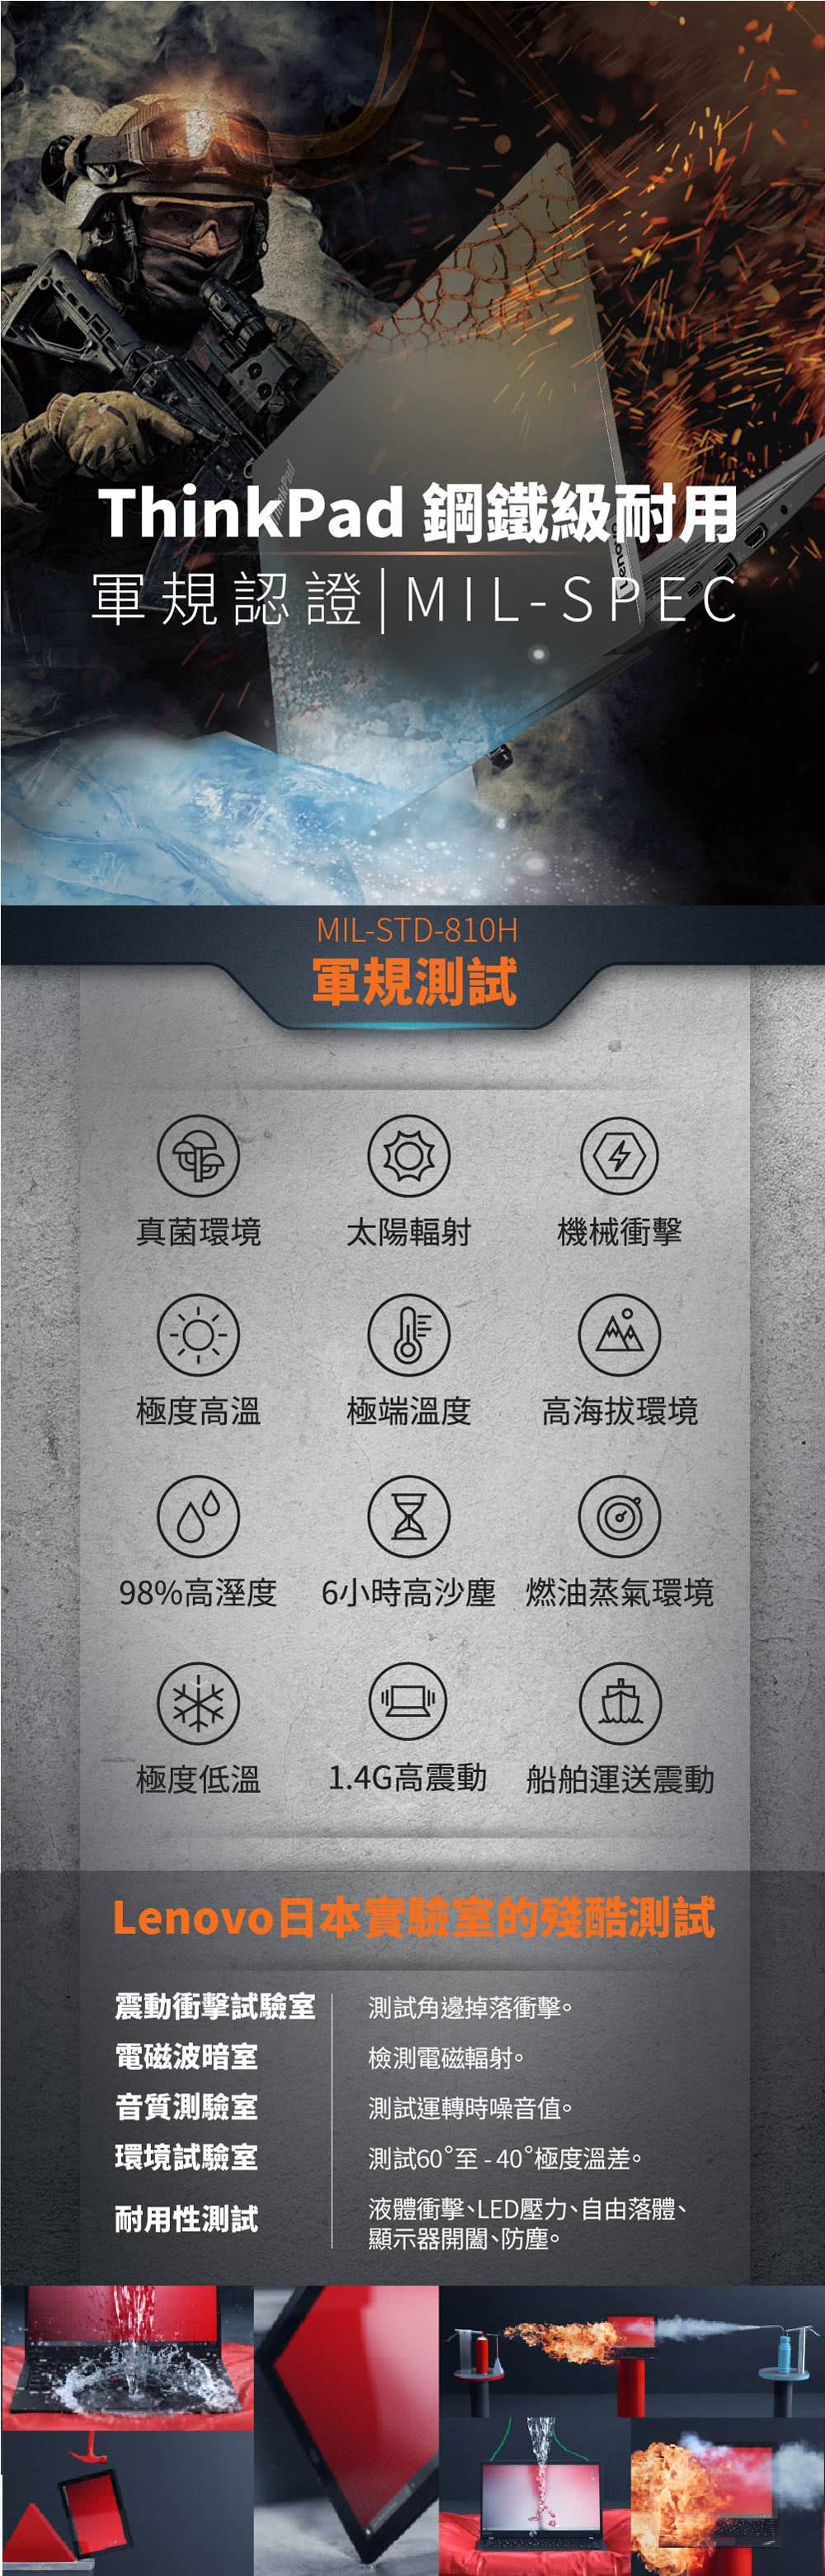 ThinkPad 聯想 14吋i5商用筆電(E14/i5-1